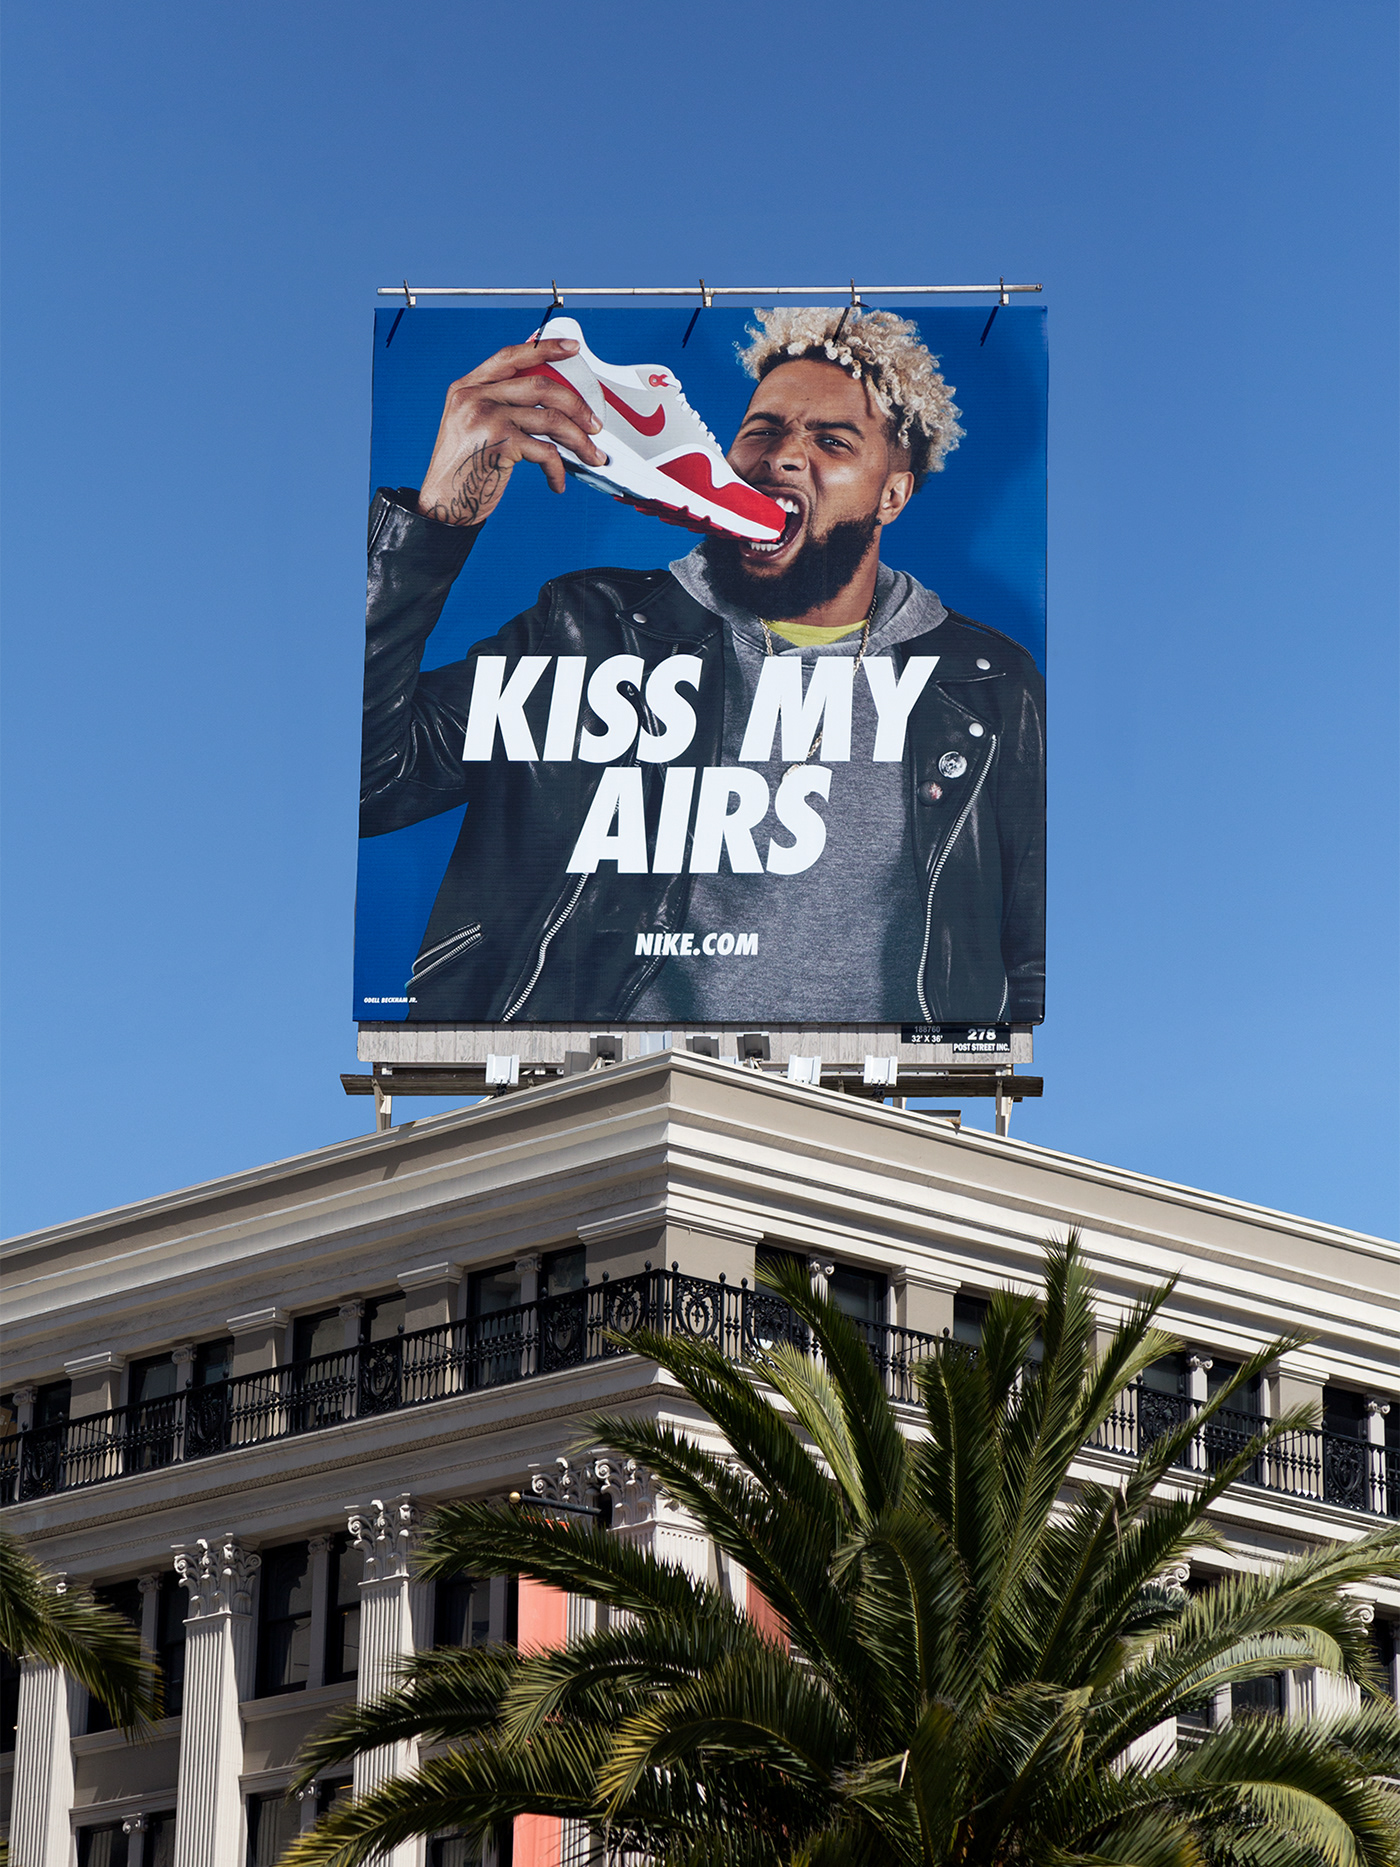 Nike air max kiss poster design branding  Advertising  air